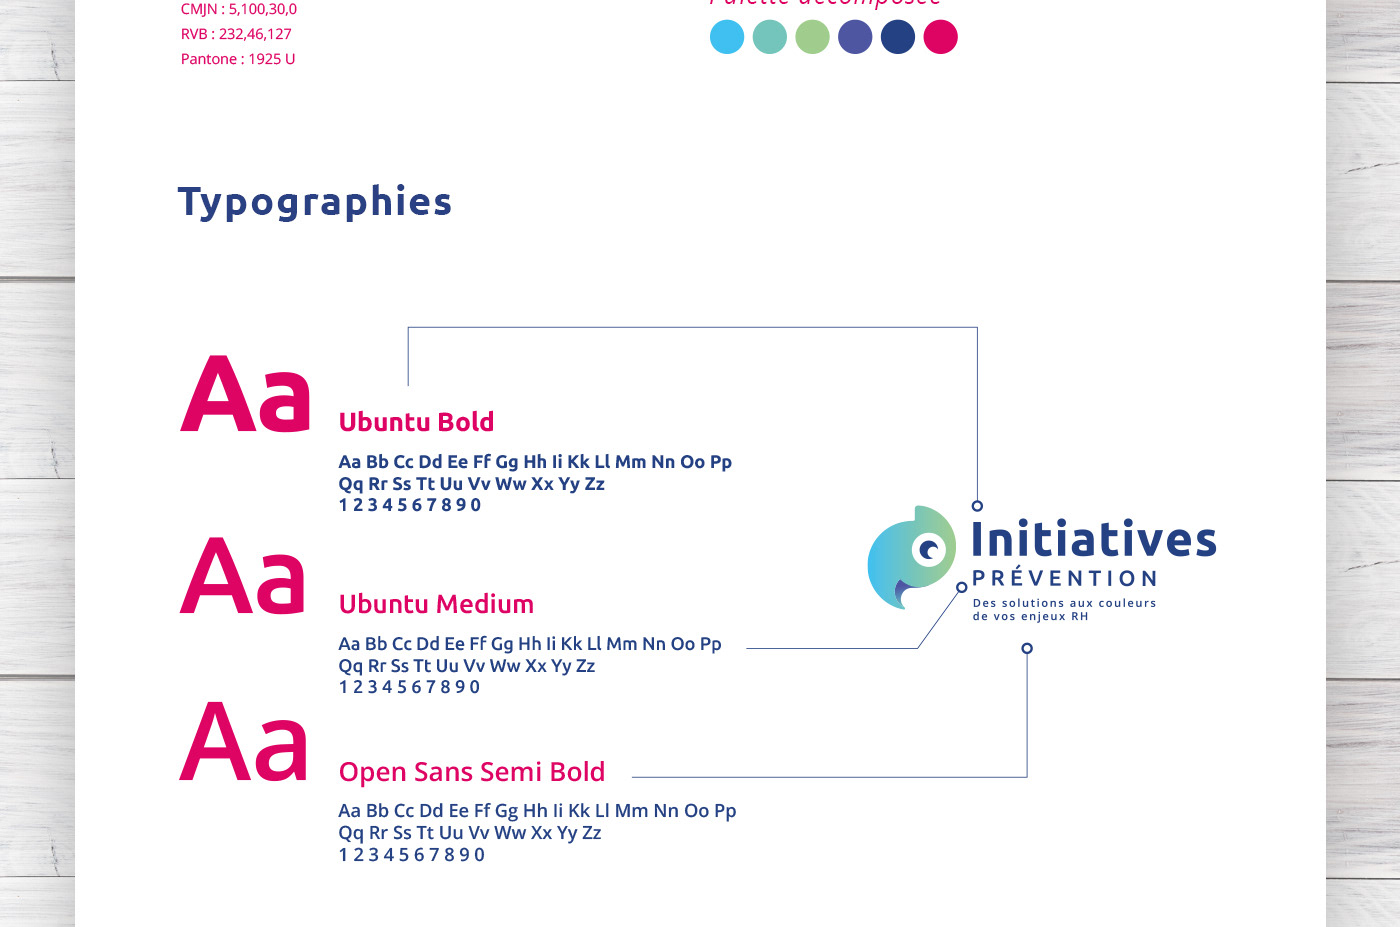 identité visuelle logo initiatives prévention RH ressources humaines charte graphique extrait solutions enjeux couleurs